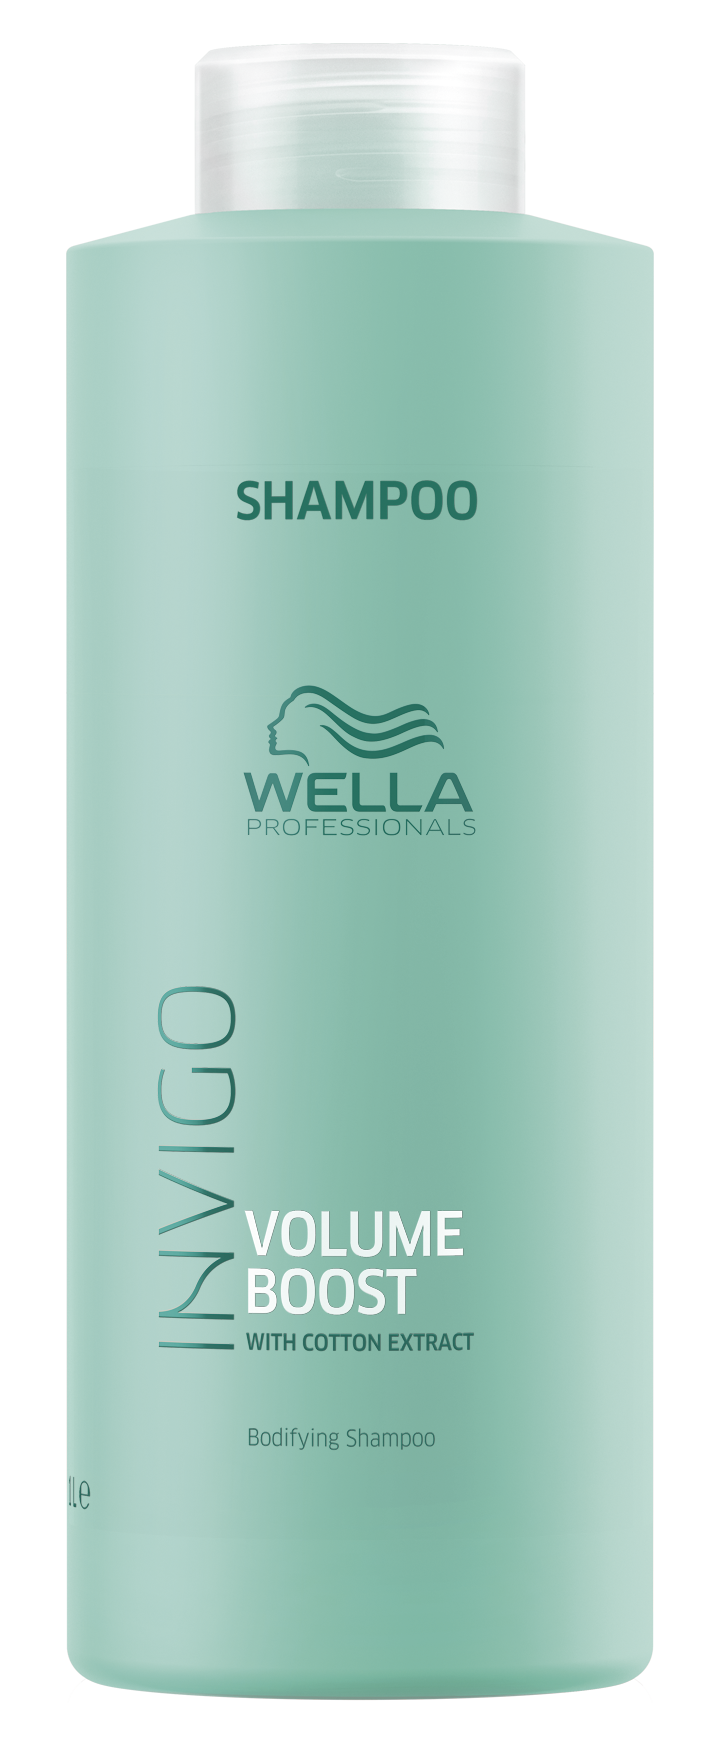 WELLA PROFESSIONALS Шампунь для придания объема / Volume Boost 1000 мл шампунь wella professionals volume boost shampoo 1000 мл